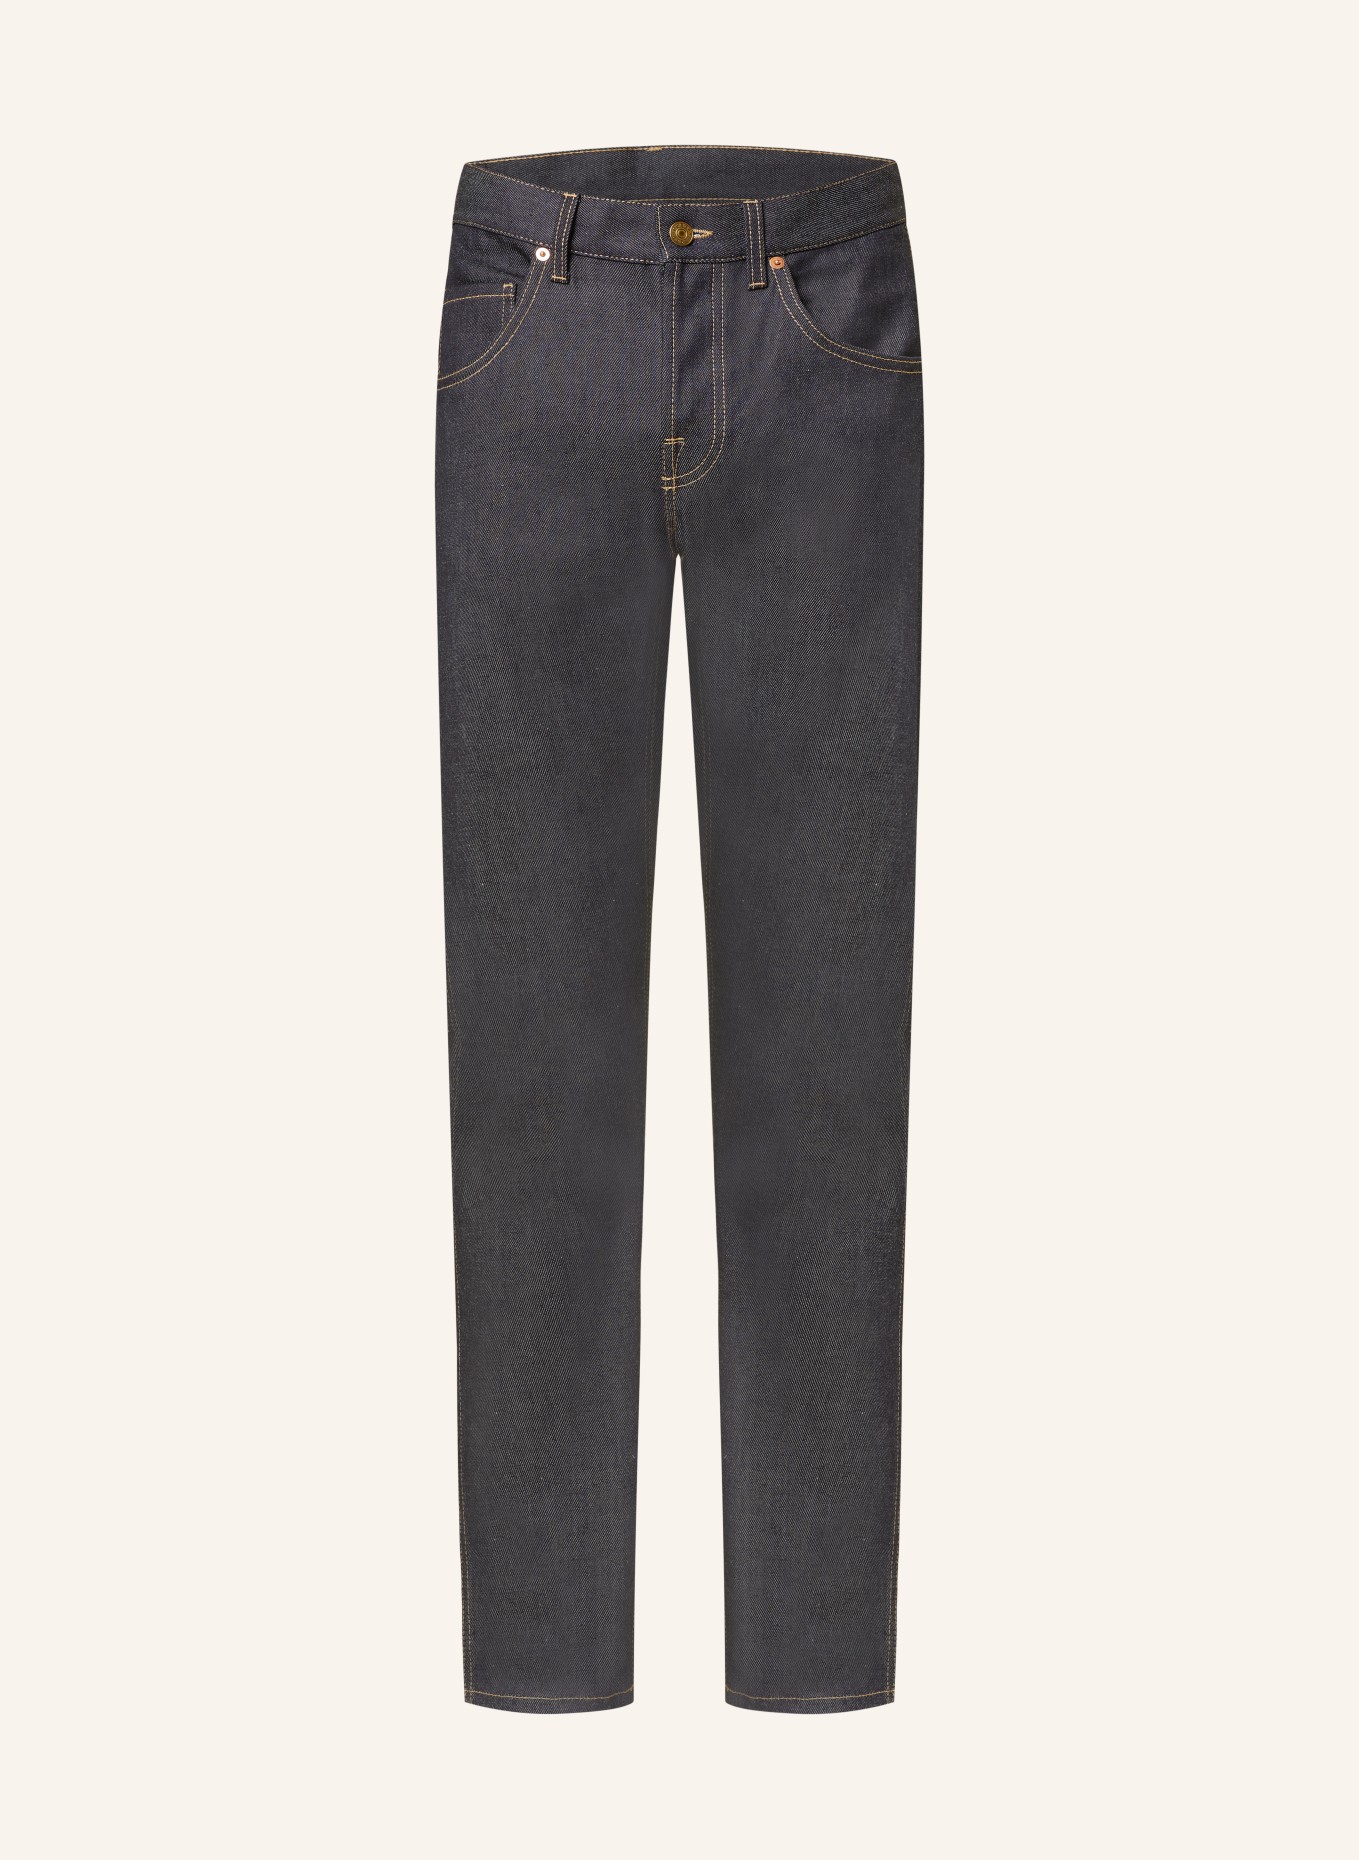 GUCCI Jeans Slim Fit, Farbe: 4759 DARK BLUE (Bild 1)